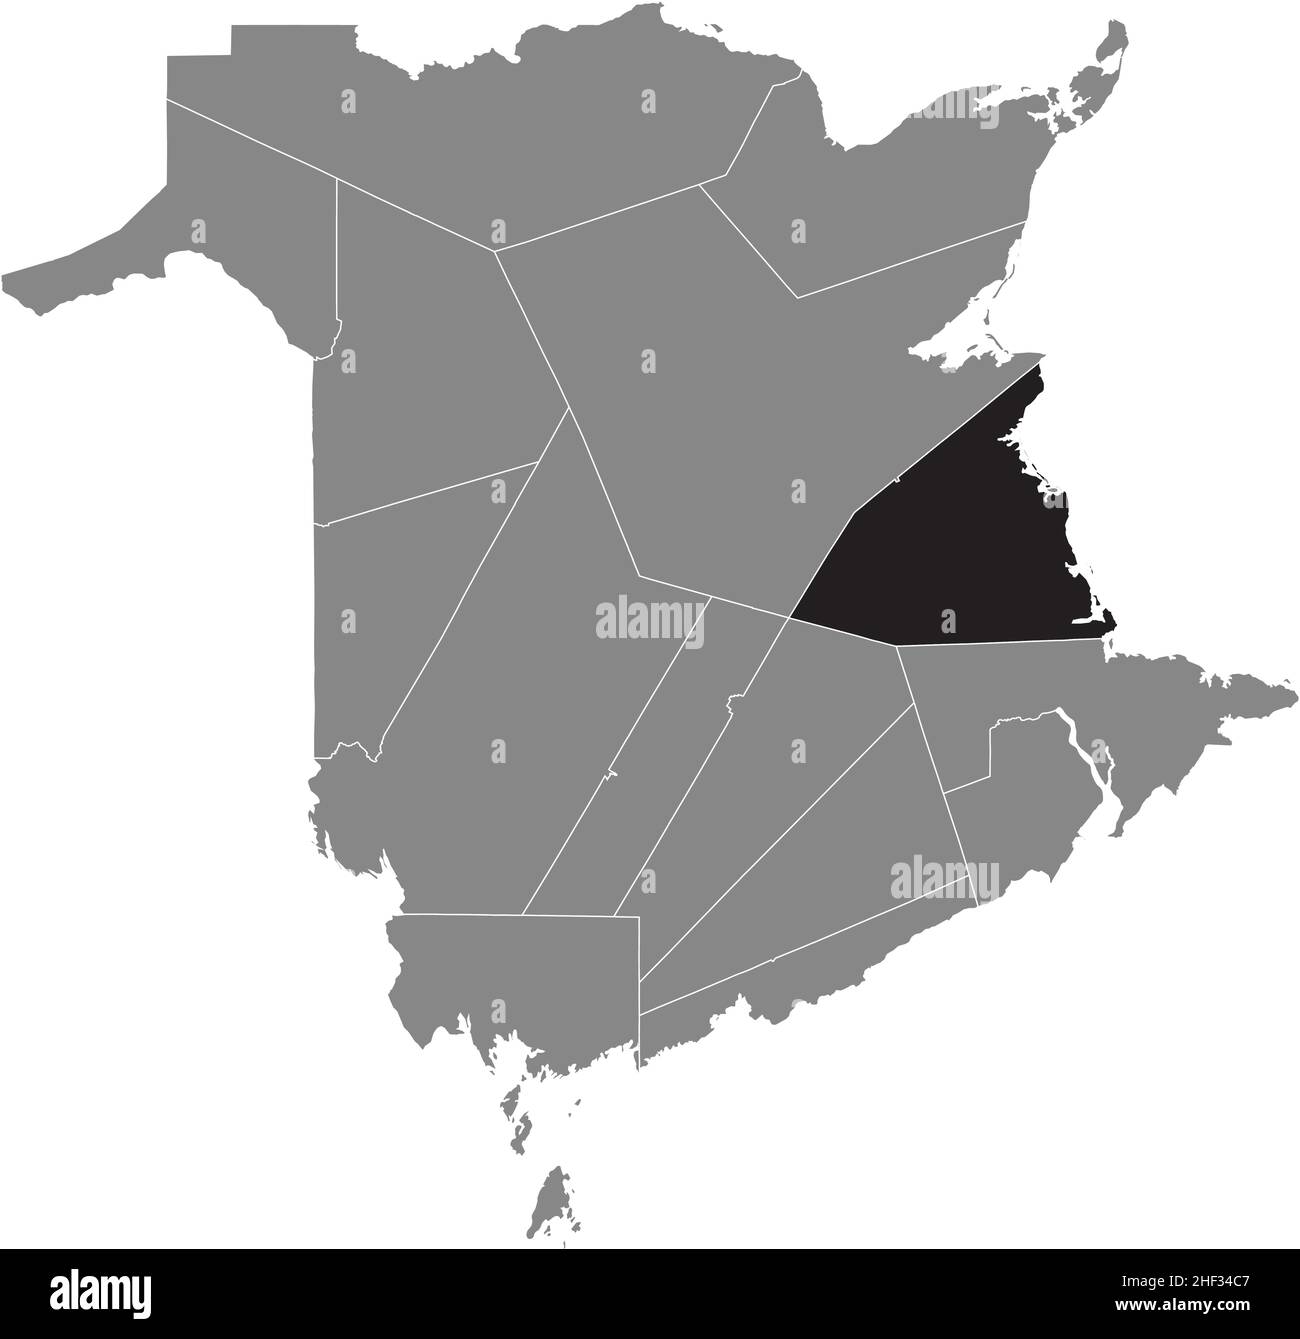 Noir plat blanc carte d'emplacement en surbrillance du COMTÉ DE KENT intérieur carte administrative grise des comtés du territoire canadien du Nouveau-Brunswick, Canada Illustration de Vecteur